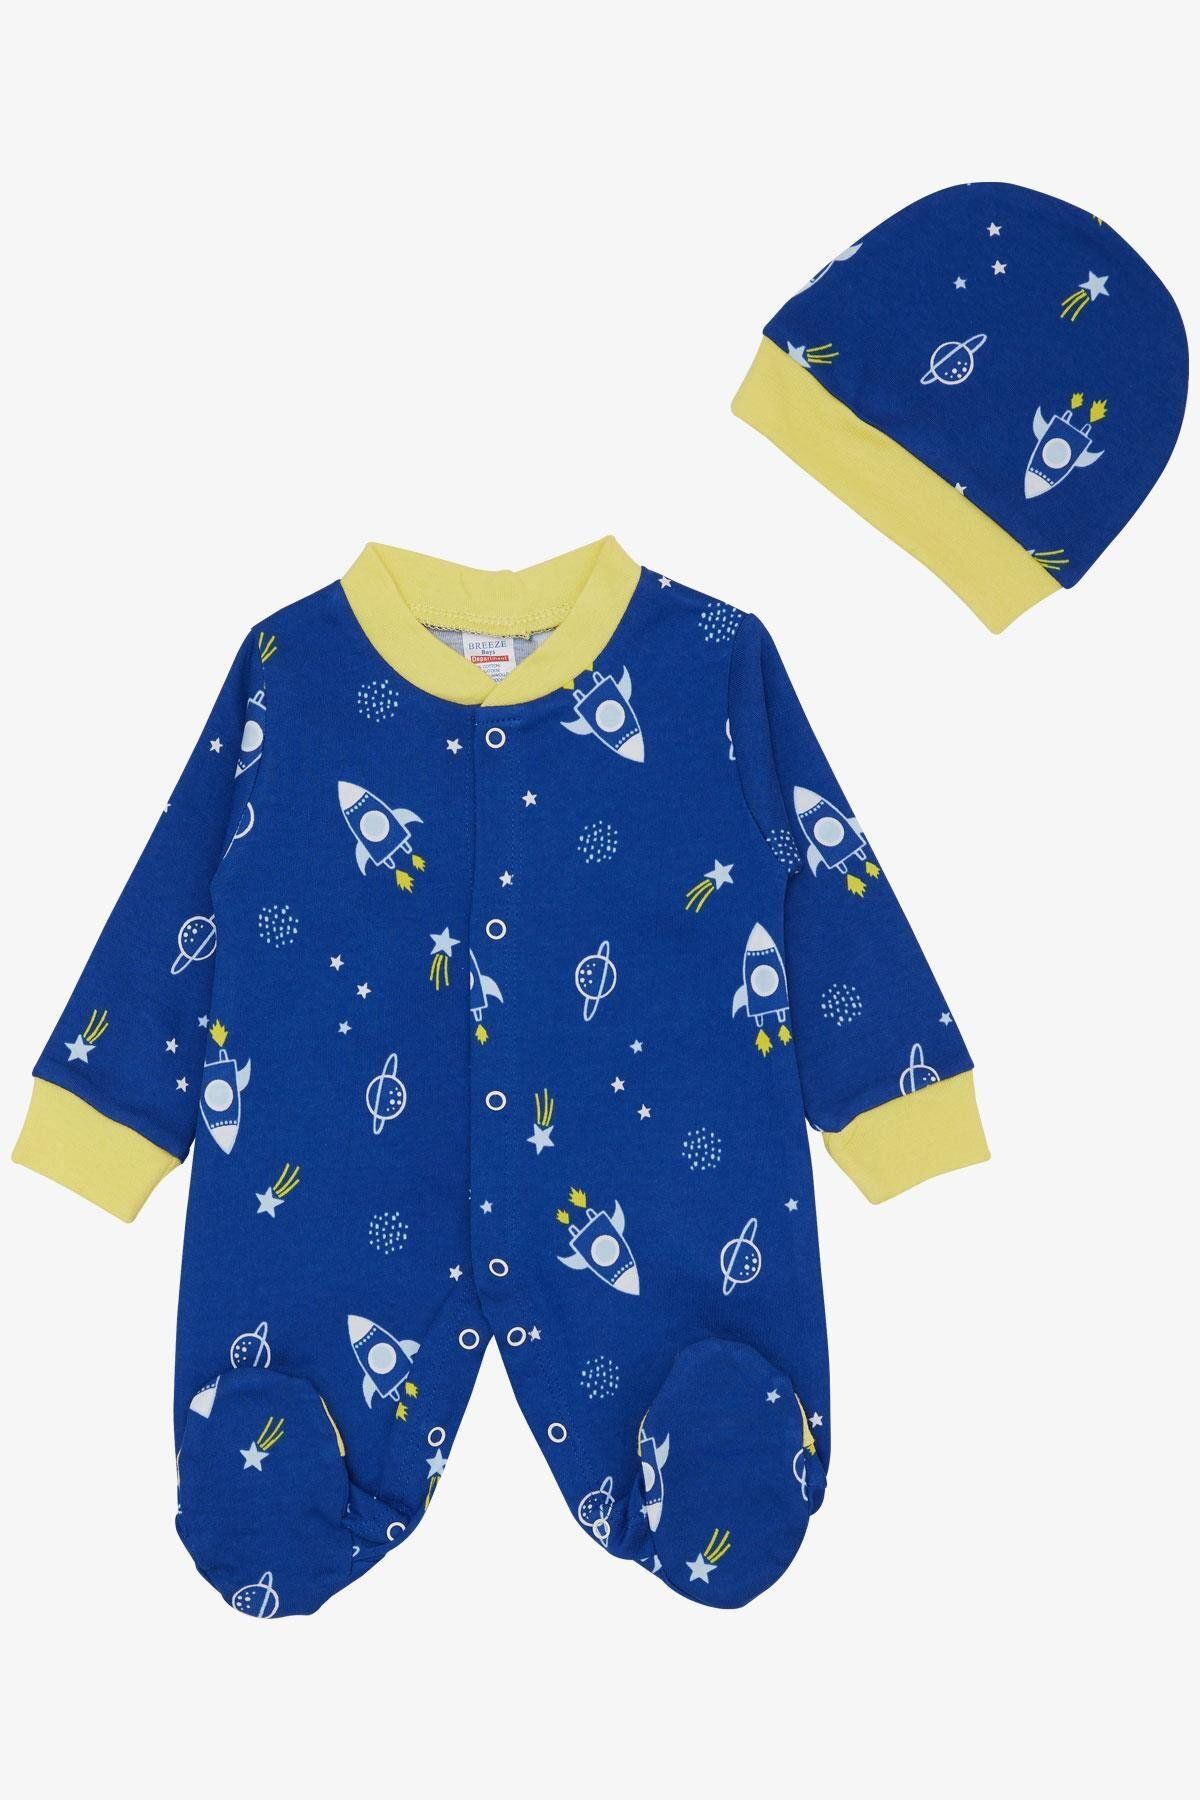 Breeze Erkek Bebek Patikli Tulum Uzay Temalı Yıldız Desenli 0-6 Ay, Saks Mavisi